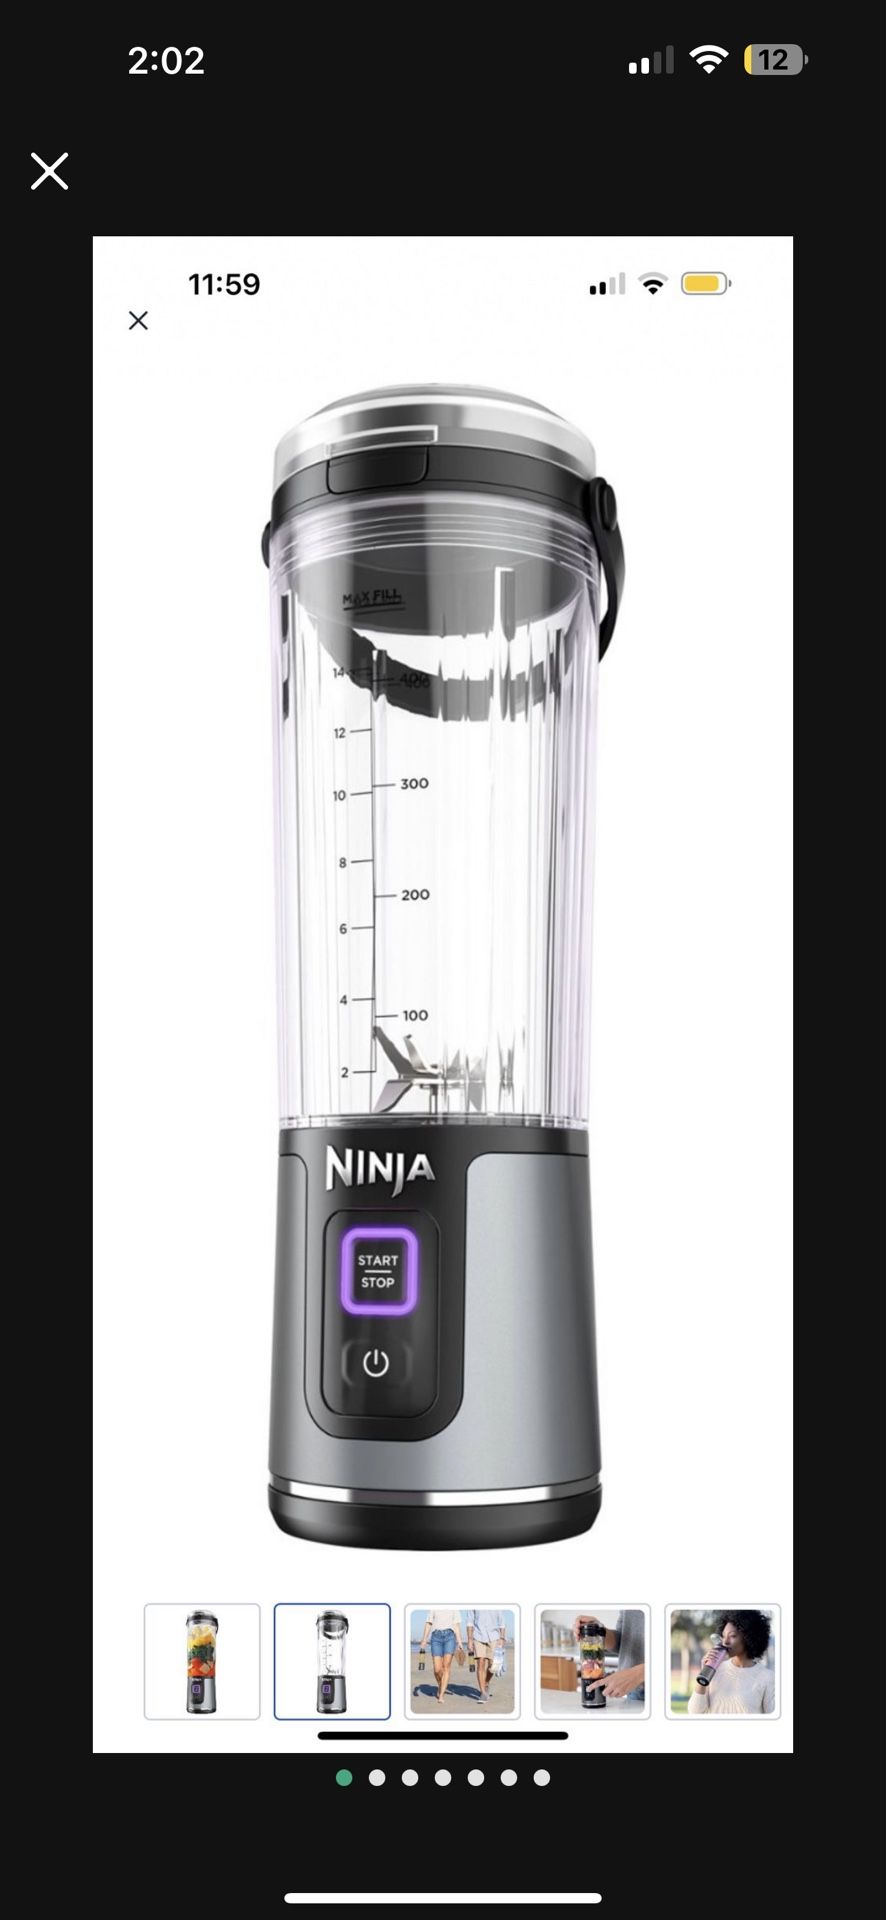 Brand New Ninja Blender Bottle 